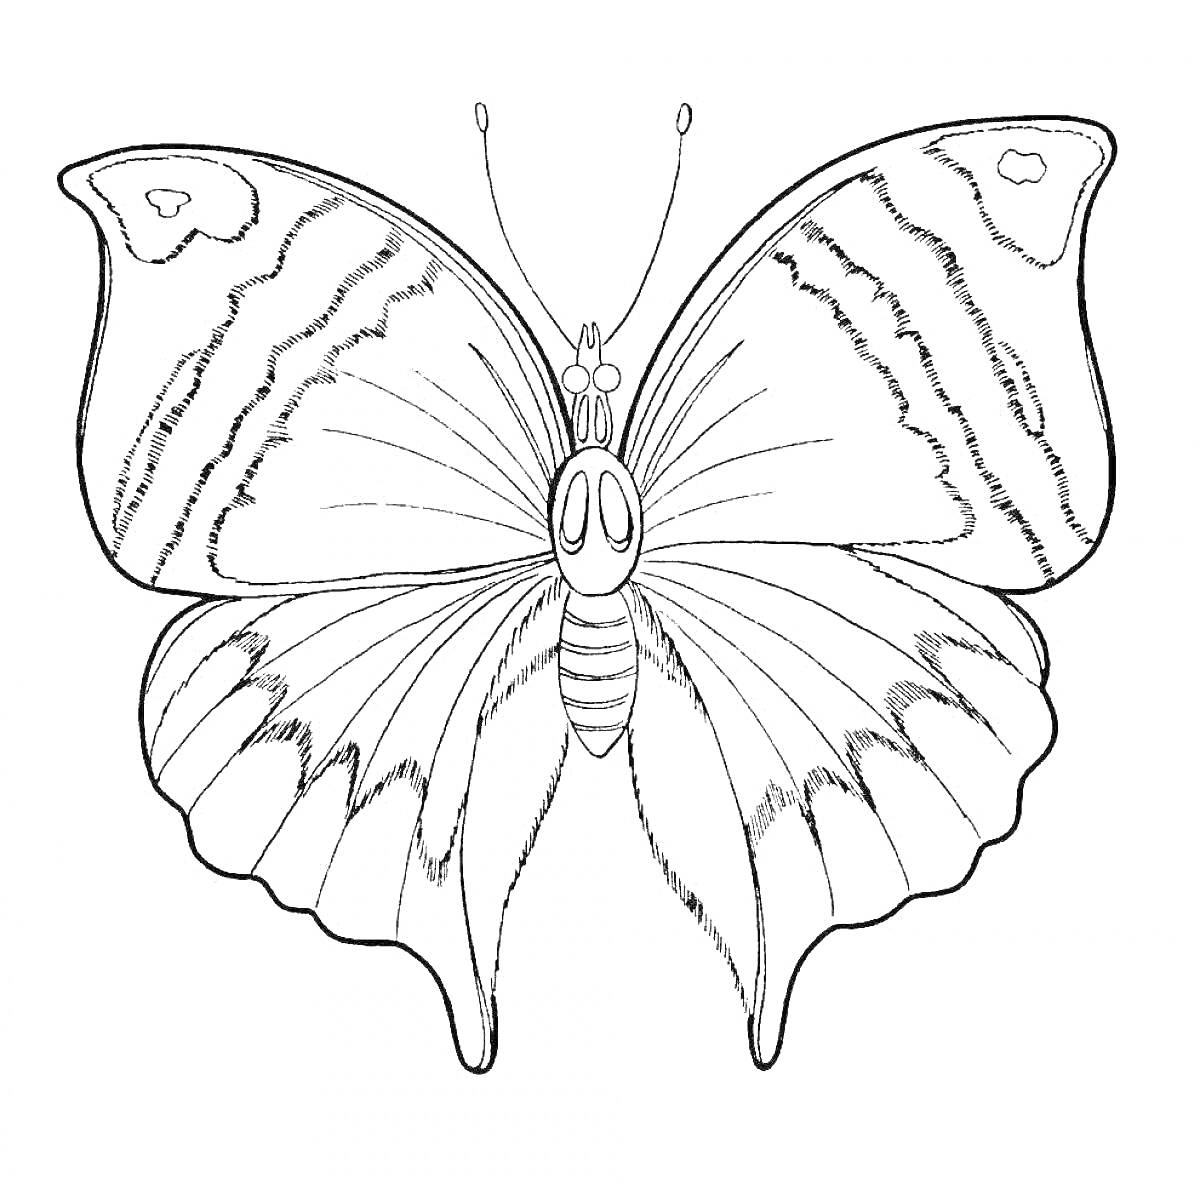 Раскраска Раскраска - трафарет бабочка с узорами на крыльях и детализацией тела